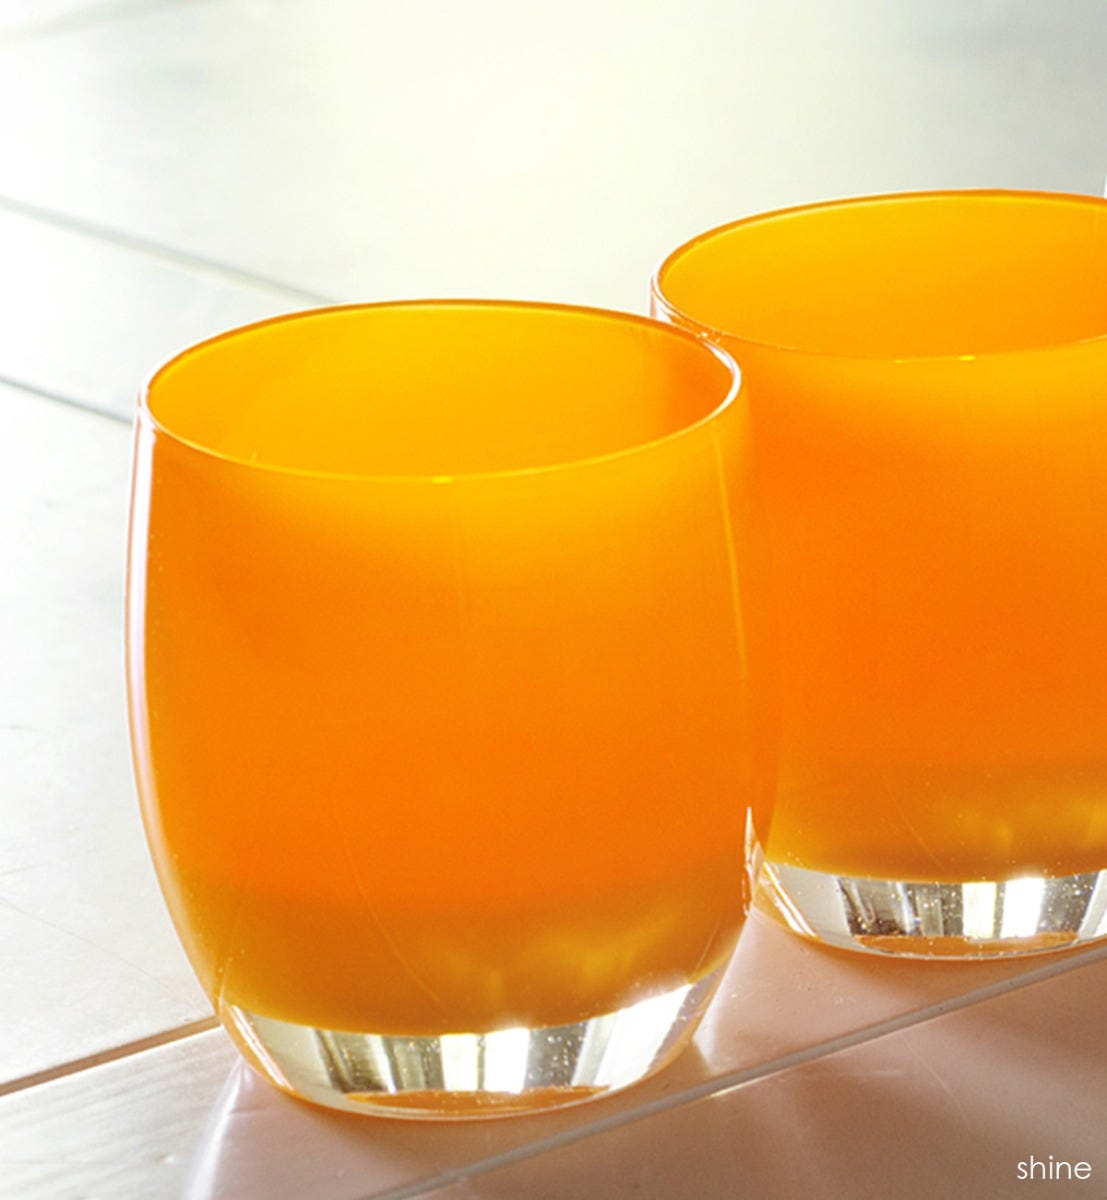 shine hand-blown bright orange glass votive candle holder